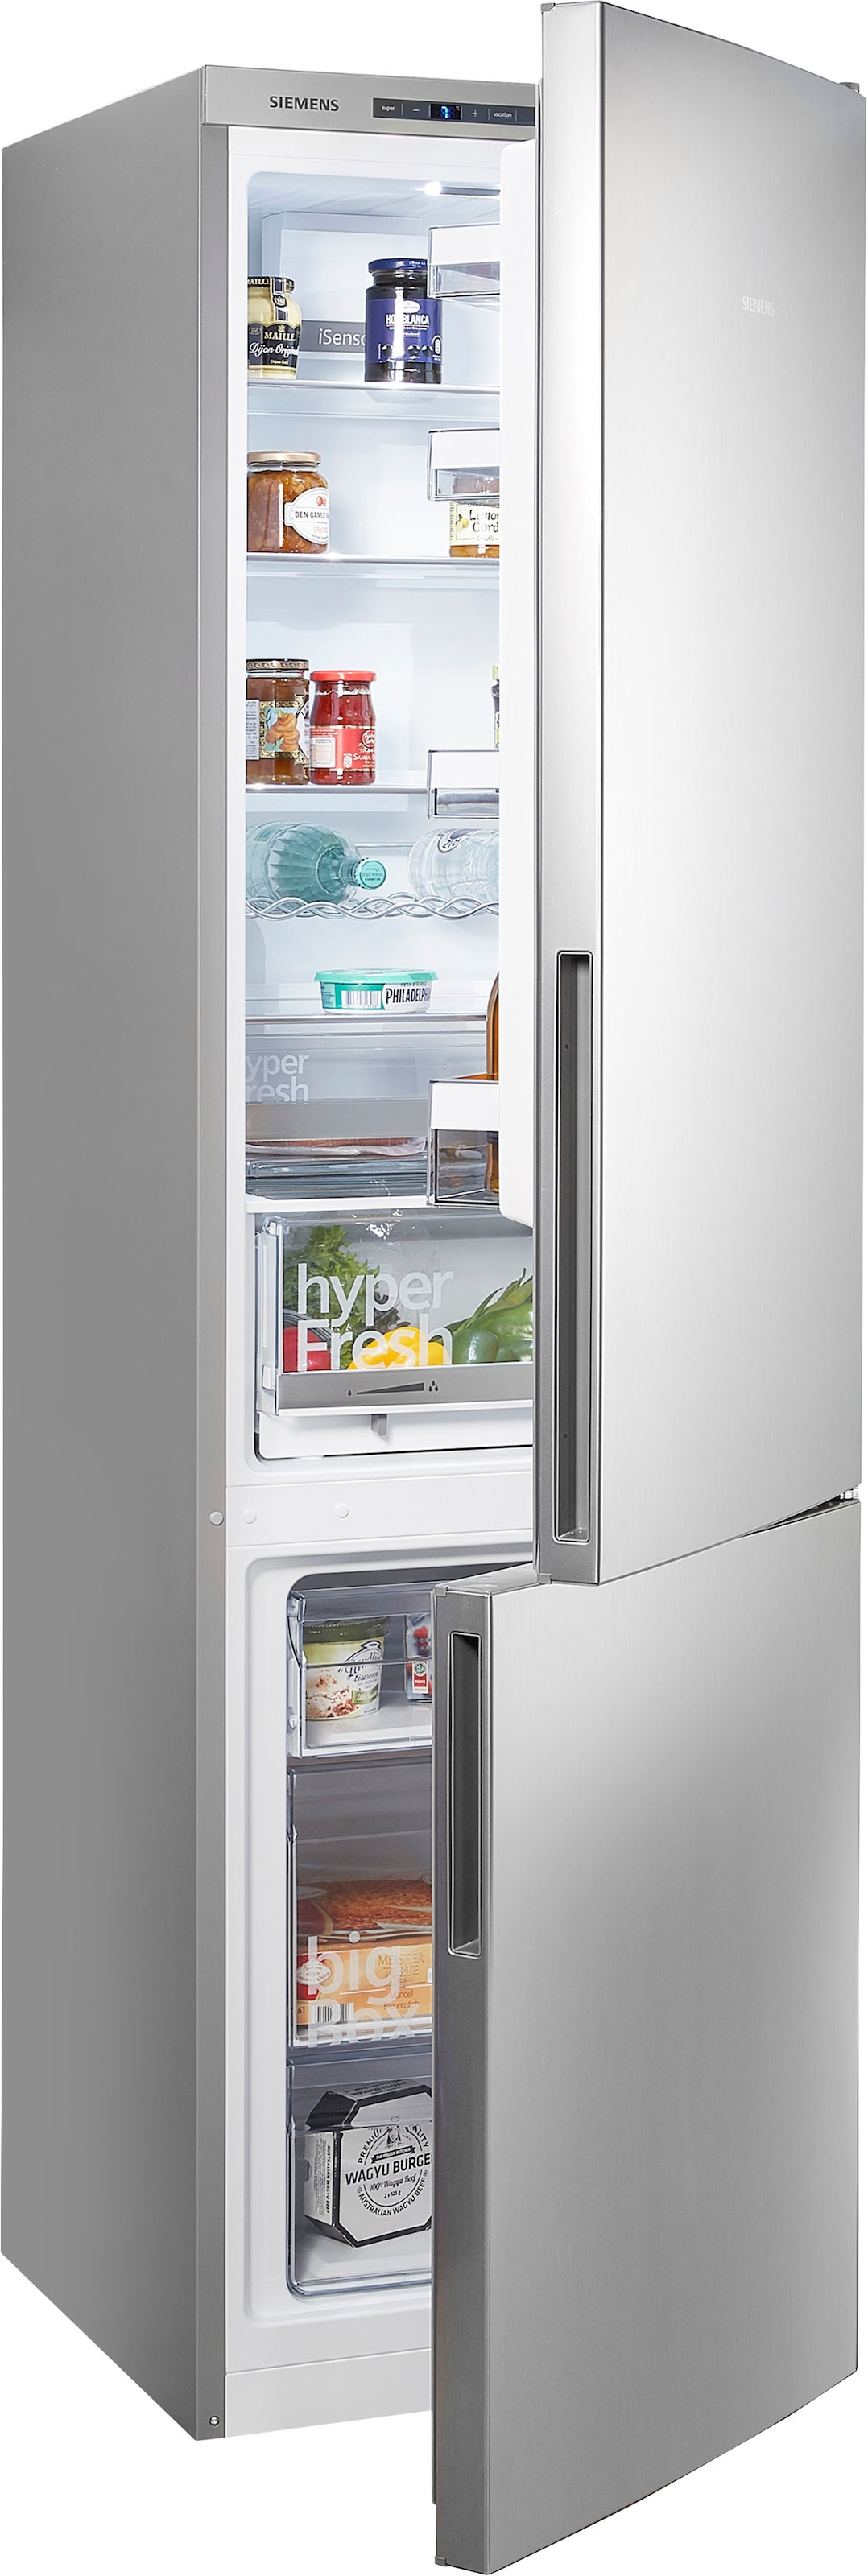 Kühl-Gefrierkombination KGK260, Kühlschrank mit Gefrierfach,  Gefrierschrank, 2in1 Kühlschrank | STABILO mehr als nur Baumarkt!